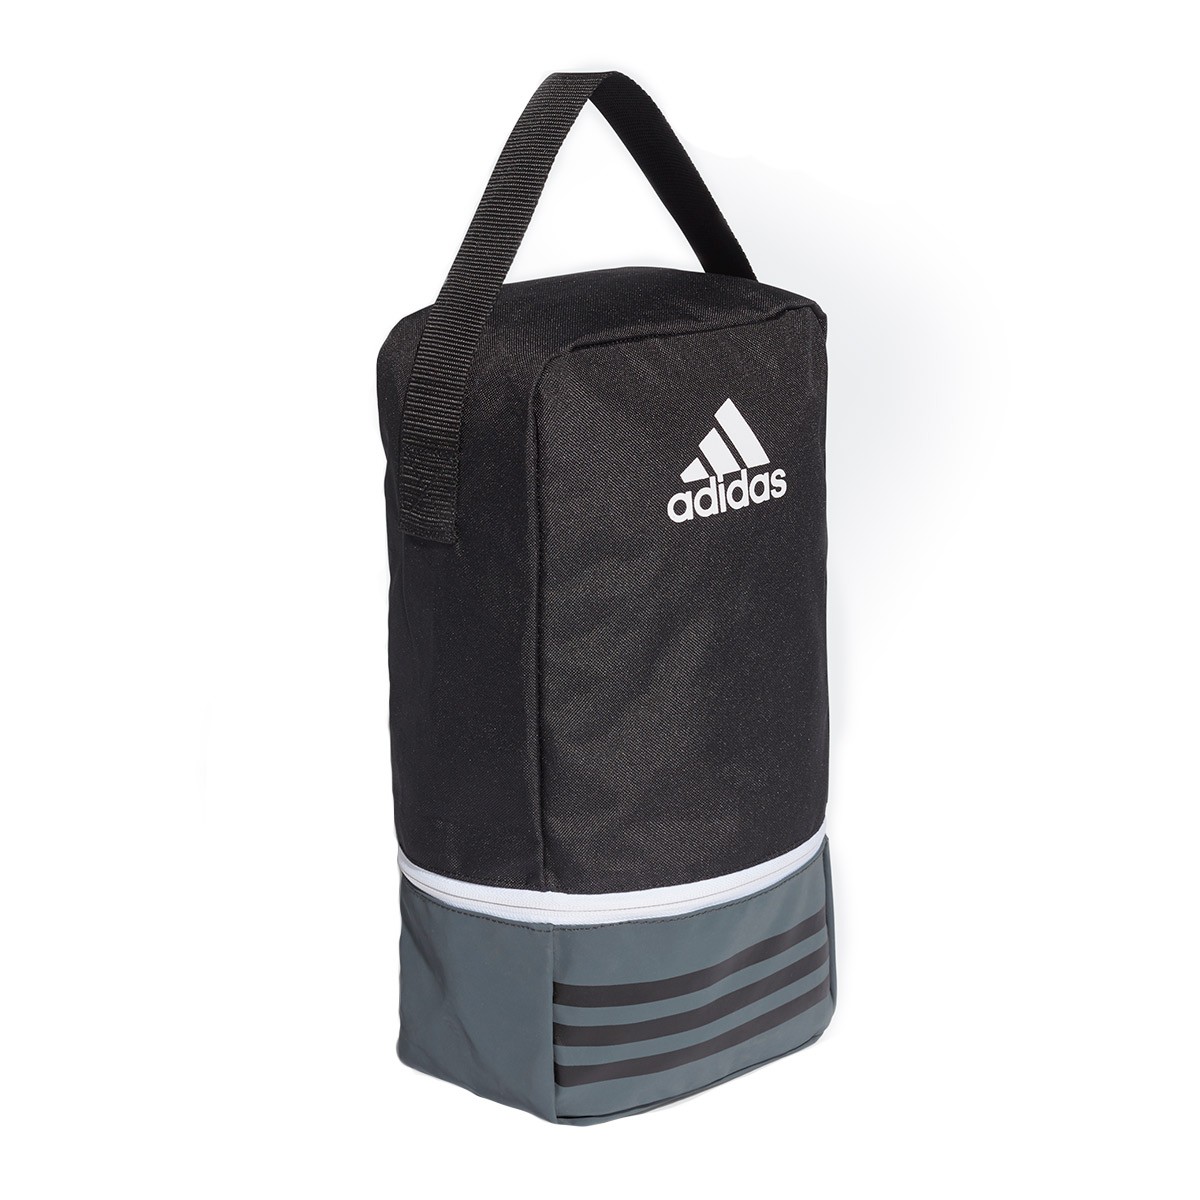 adidas sb backpack